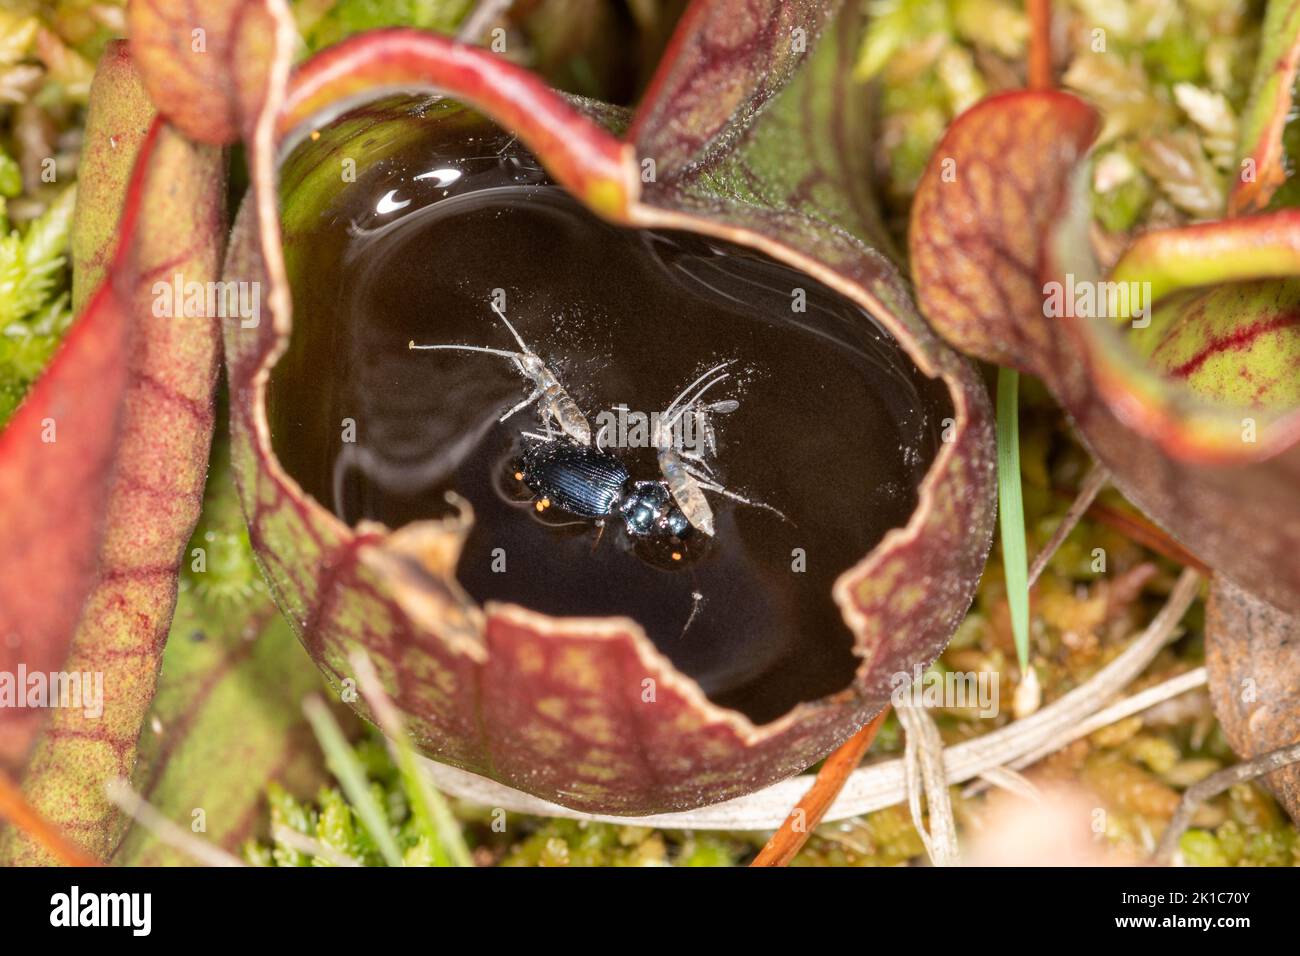 Divers insectes piégés et noyés à l'intérieur d'une plante pichet, une plante carnivore, sur une tourbière. Introduit des plantes non indigènes au Royaume-Uni. Banque D'Images